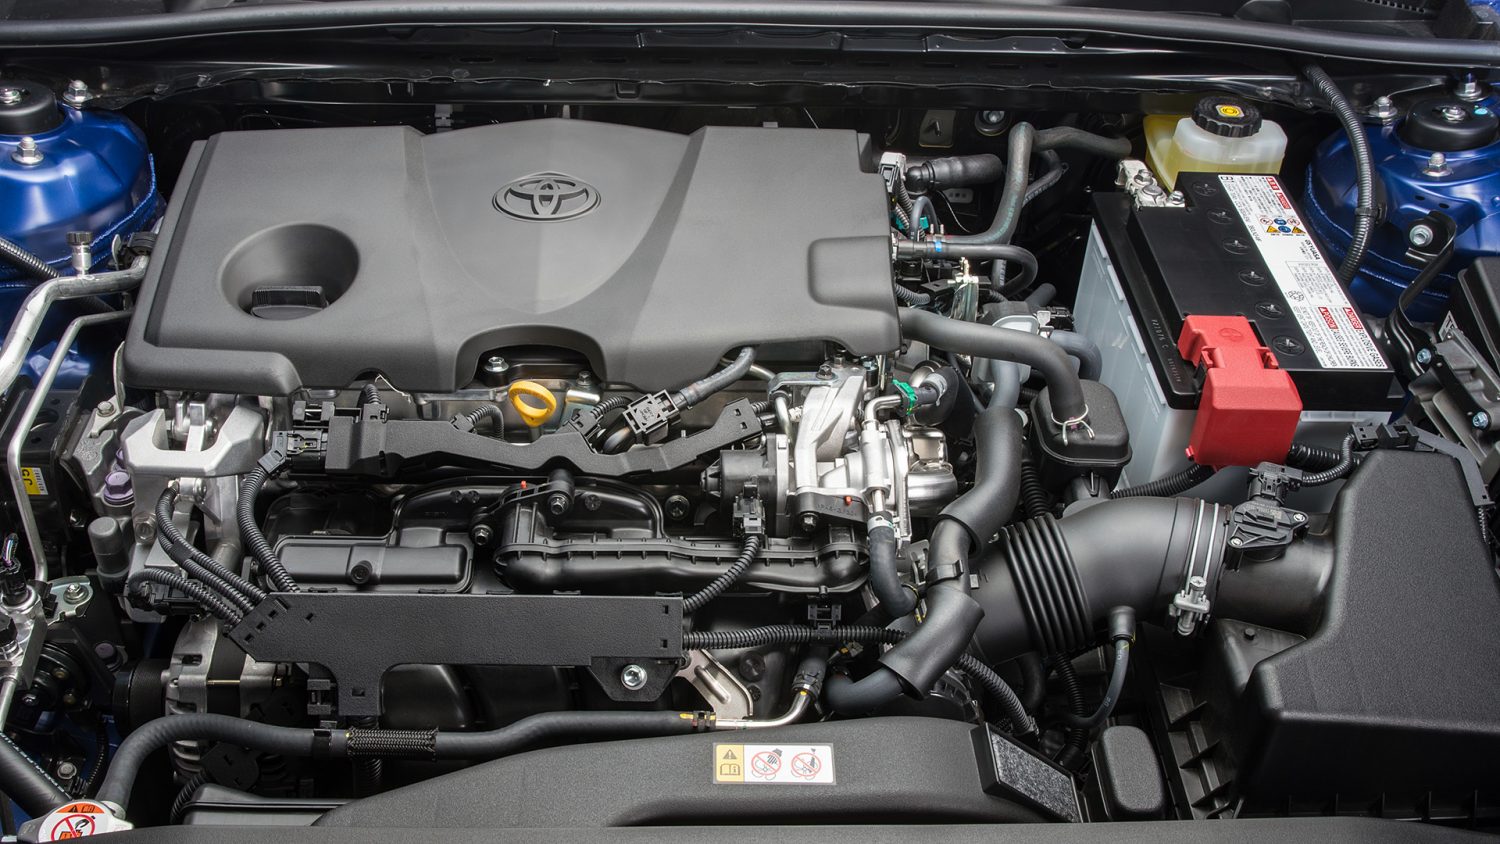 2018 Toyota Camry Hybrid